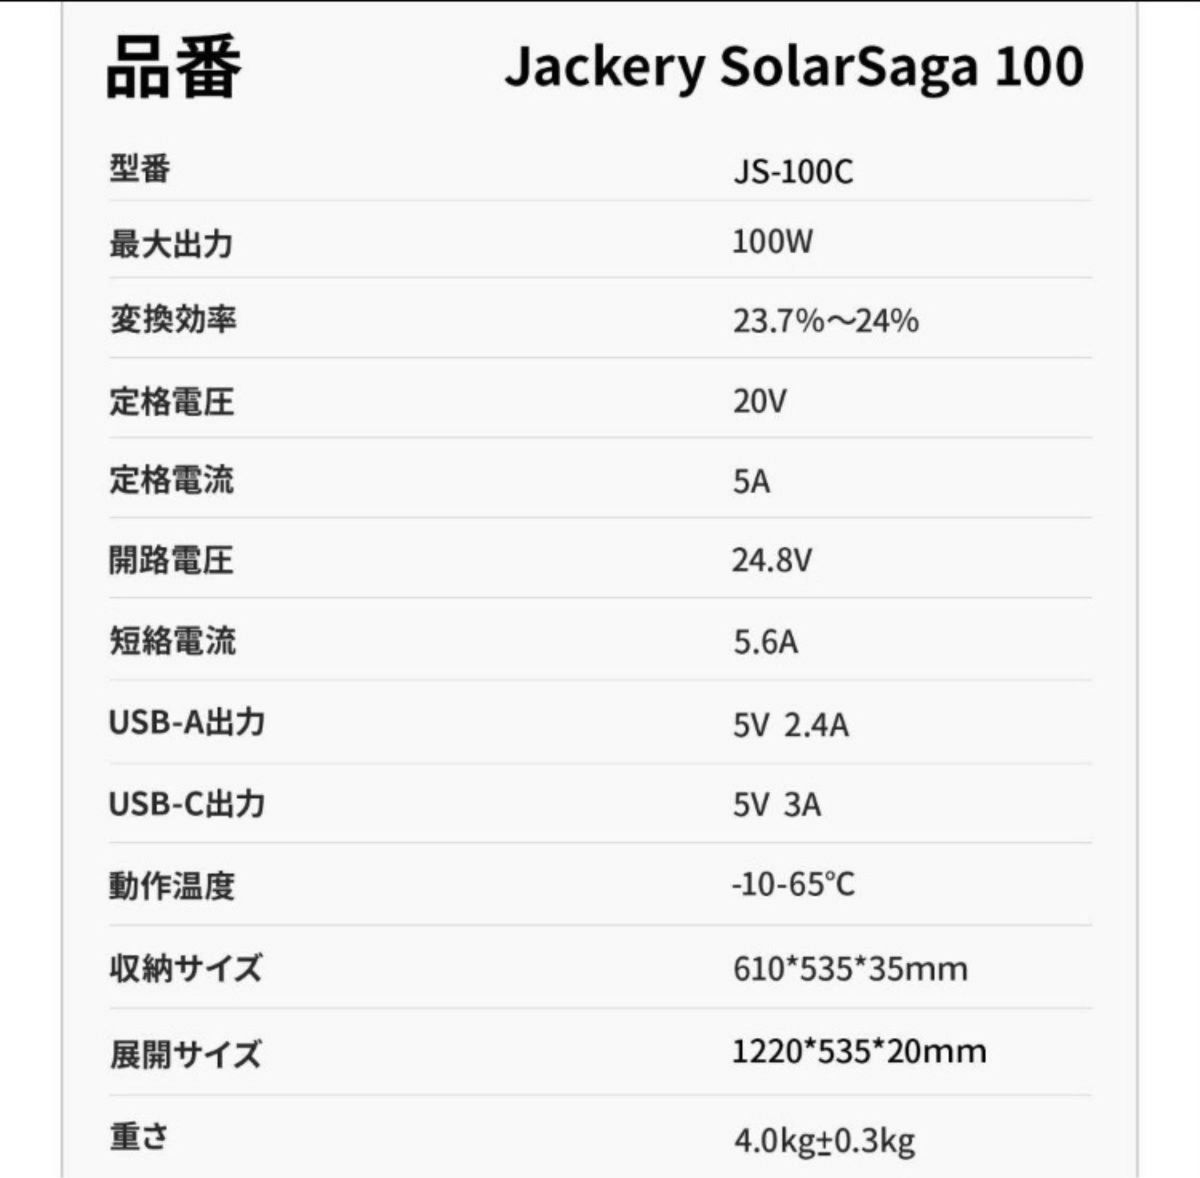 2枚セット　Jackery SolarSaga 100 美品 100W ソーラーパネル 防災 コンパクト ジャックリー